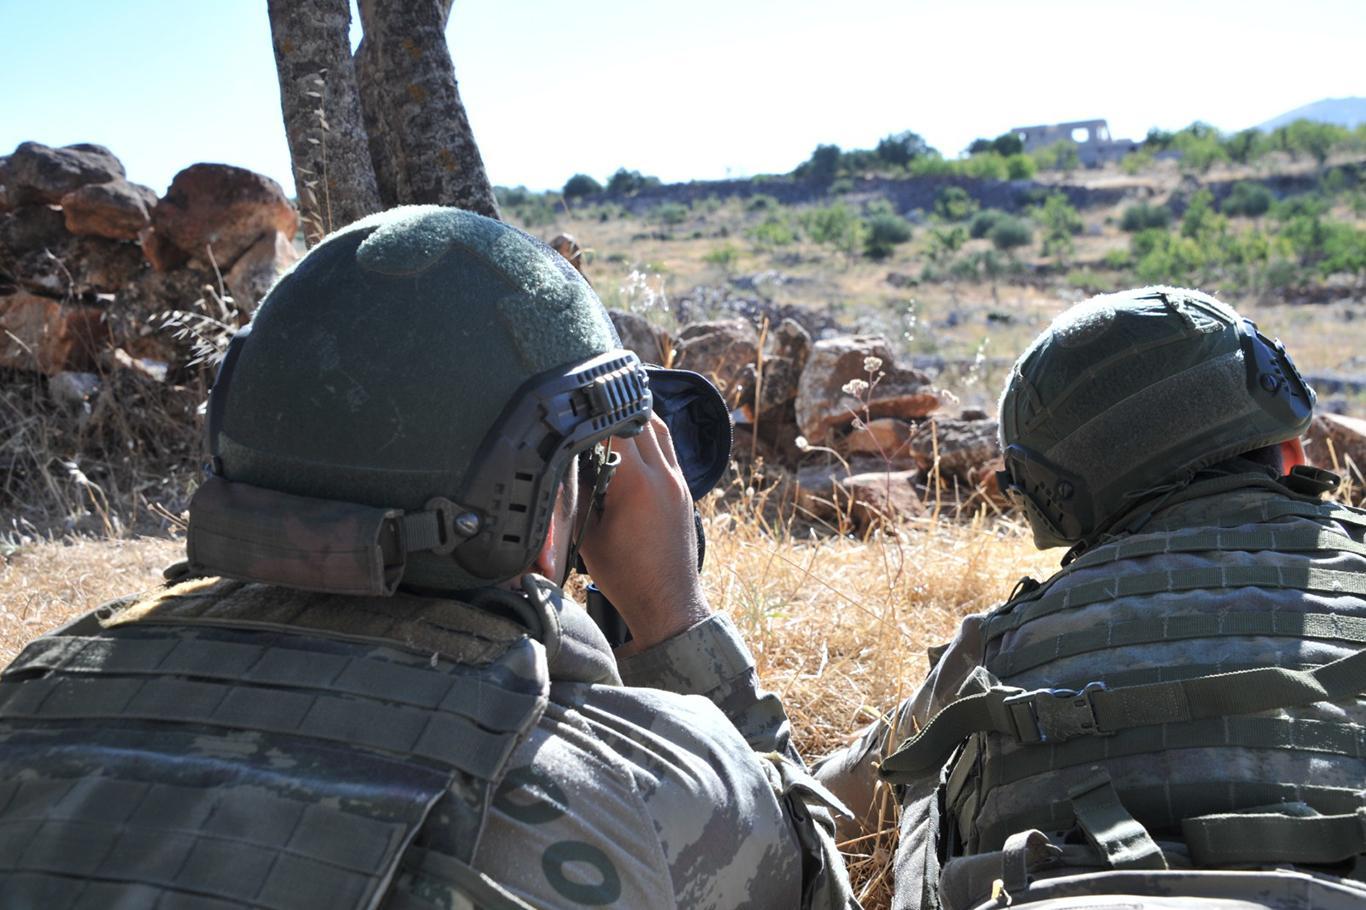 3 PKK members killed in northern Iraq, Turkey’s Defense Ministry says